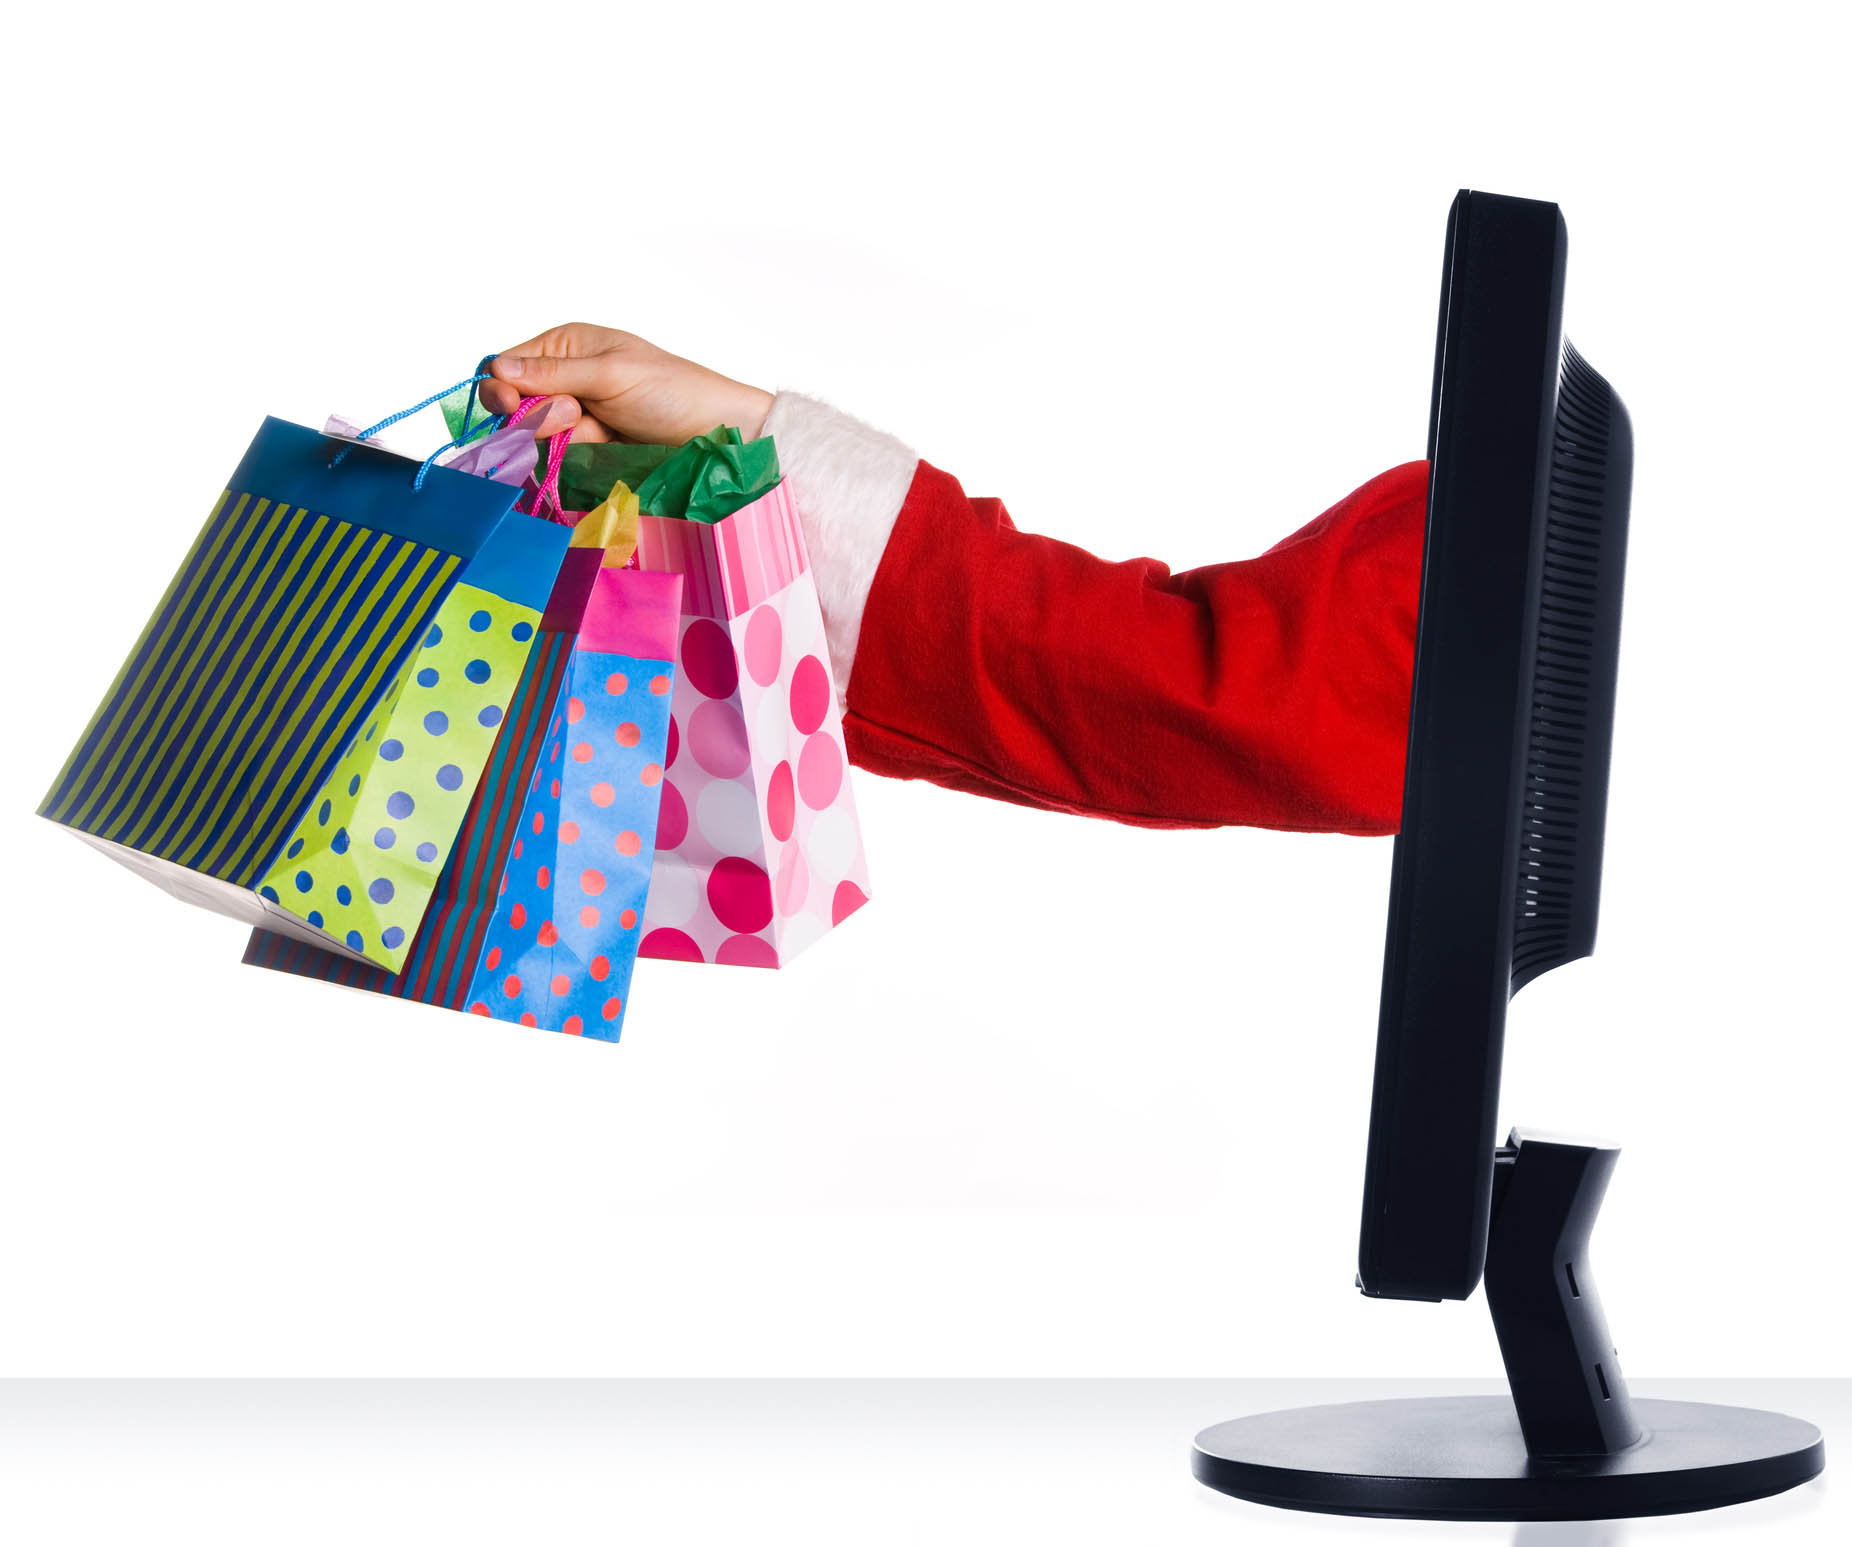 Online Shopping – Advantageous, but not 